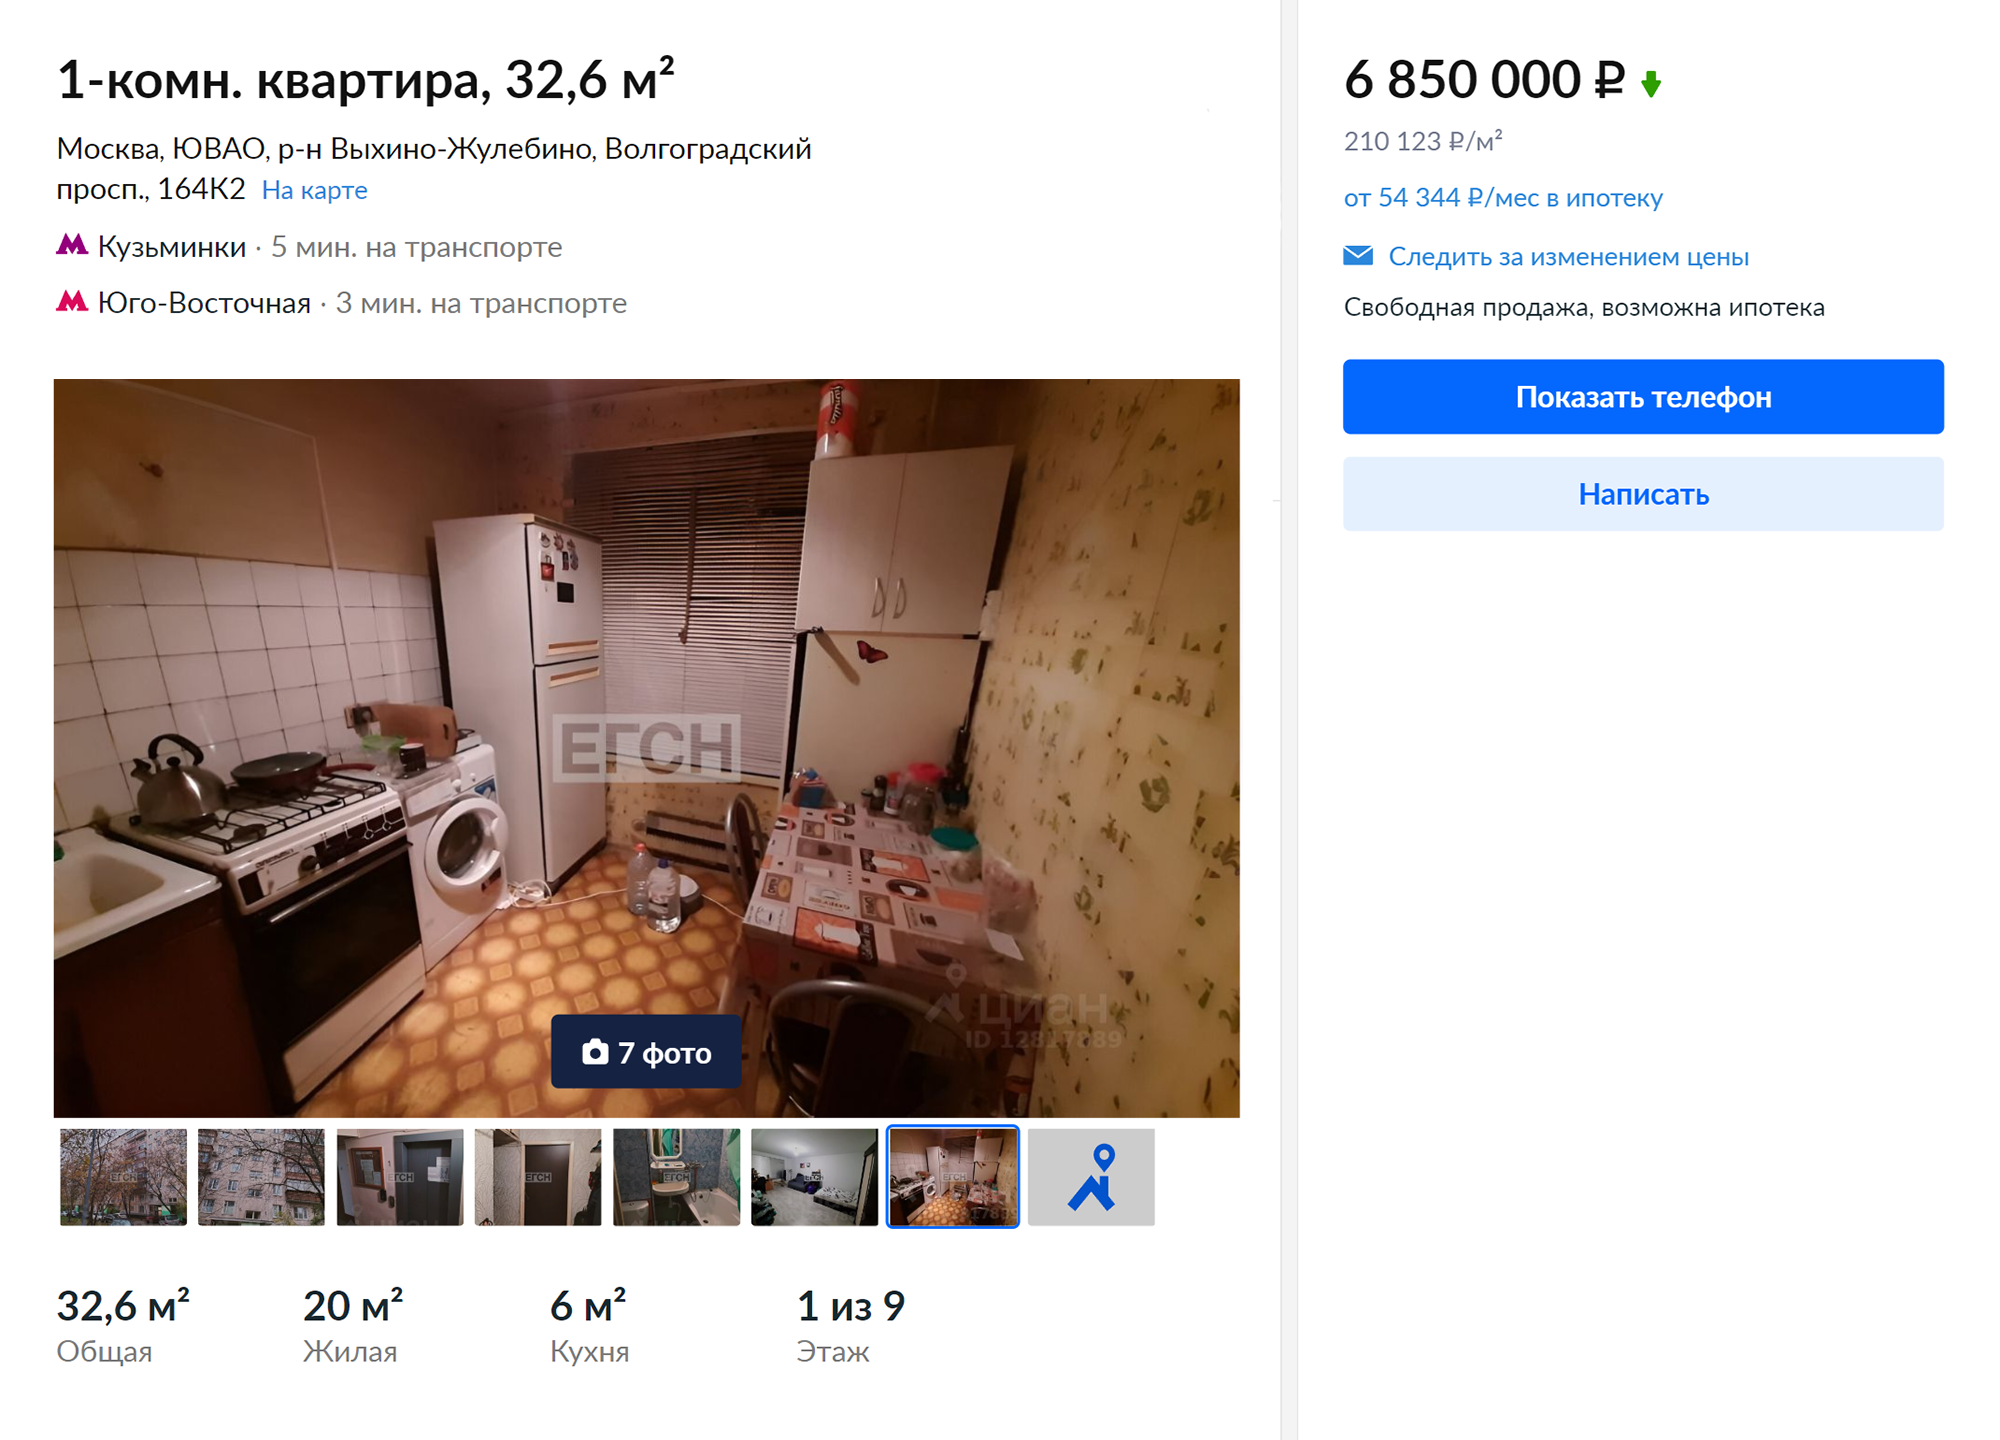 Стоимость однокомнатных квартир в Выхине-Жулебине начинаются от 6,85 млн рублей. Источник: cian.ru